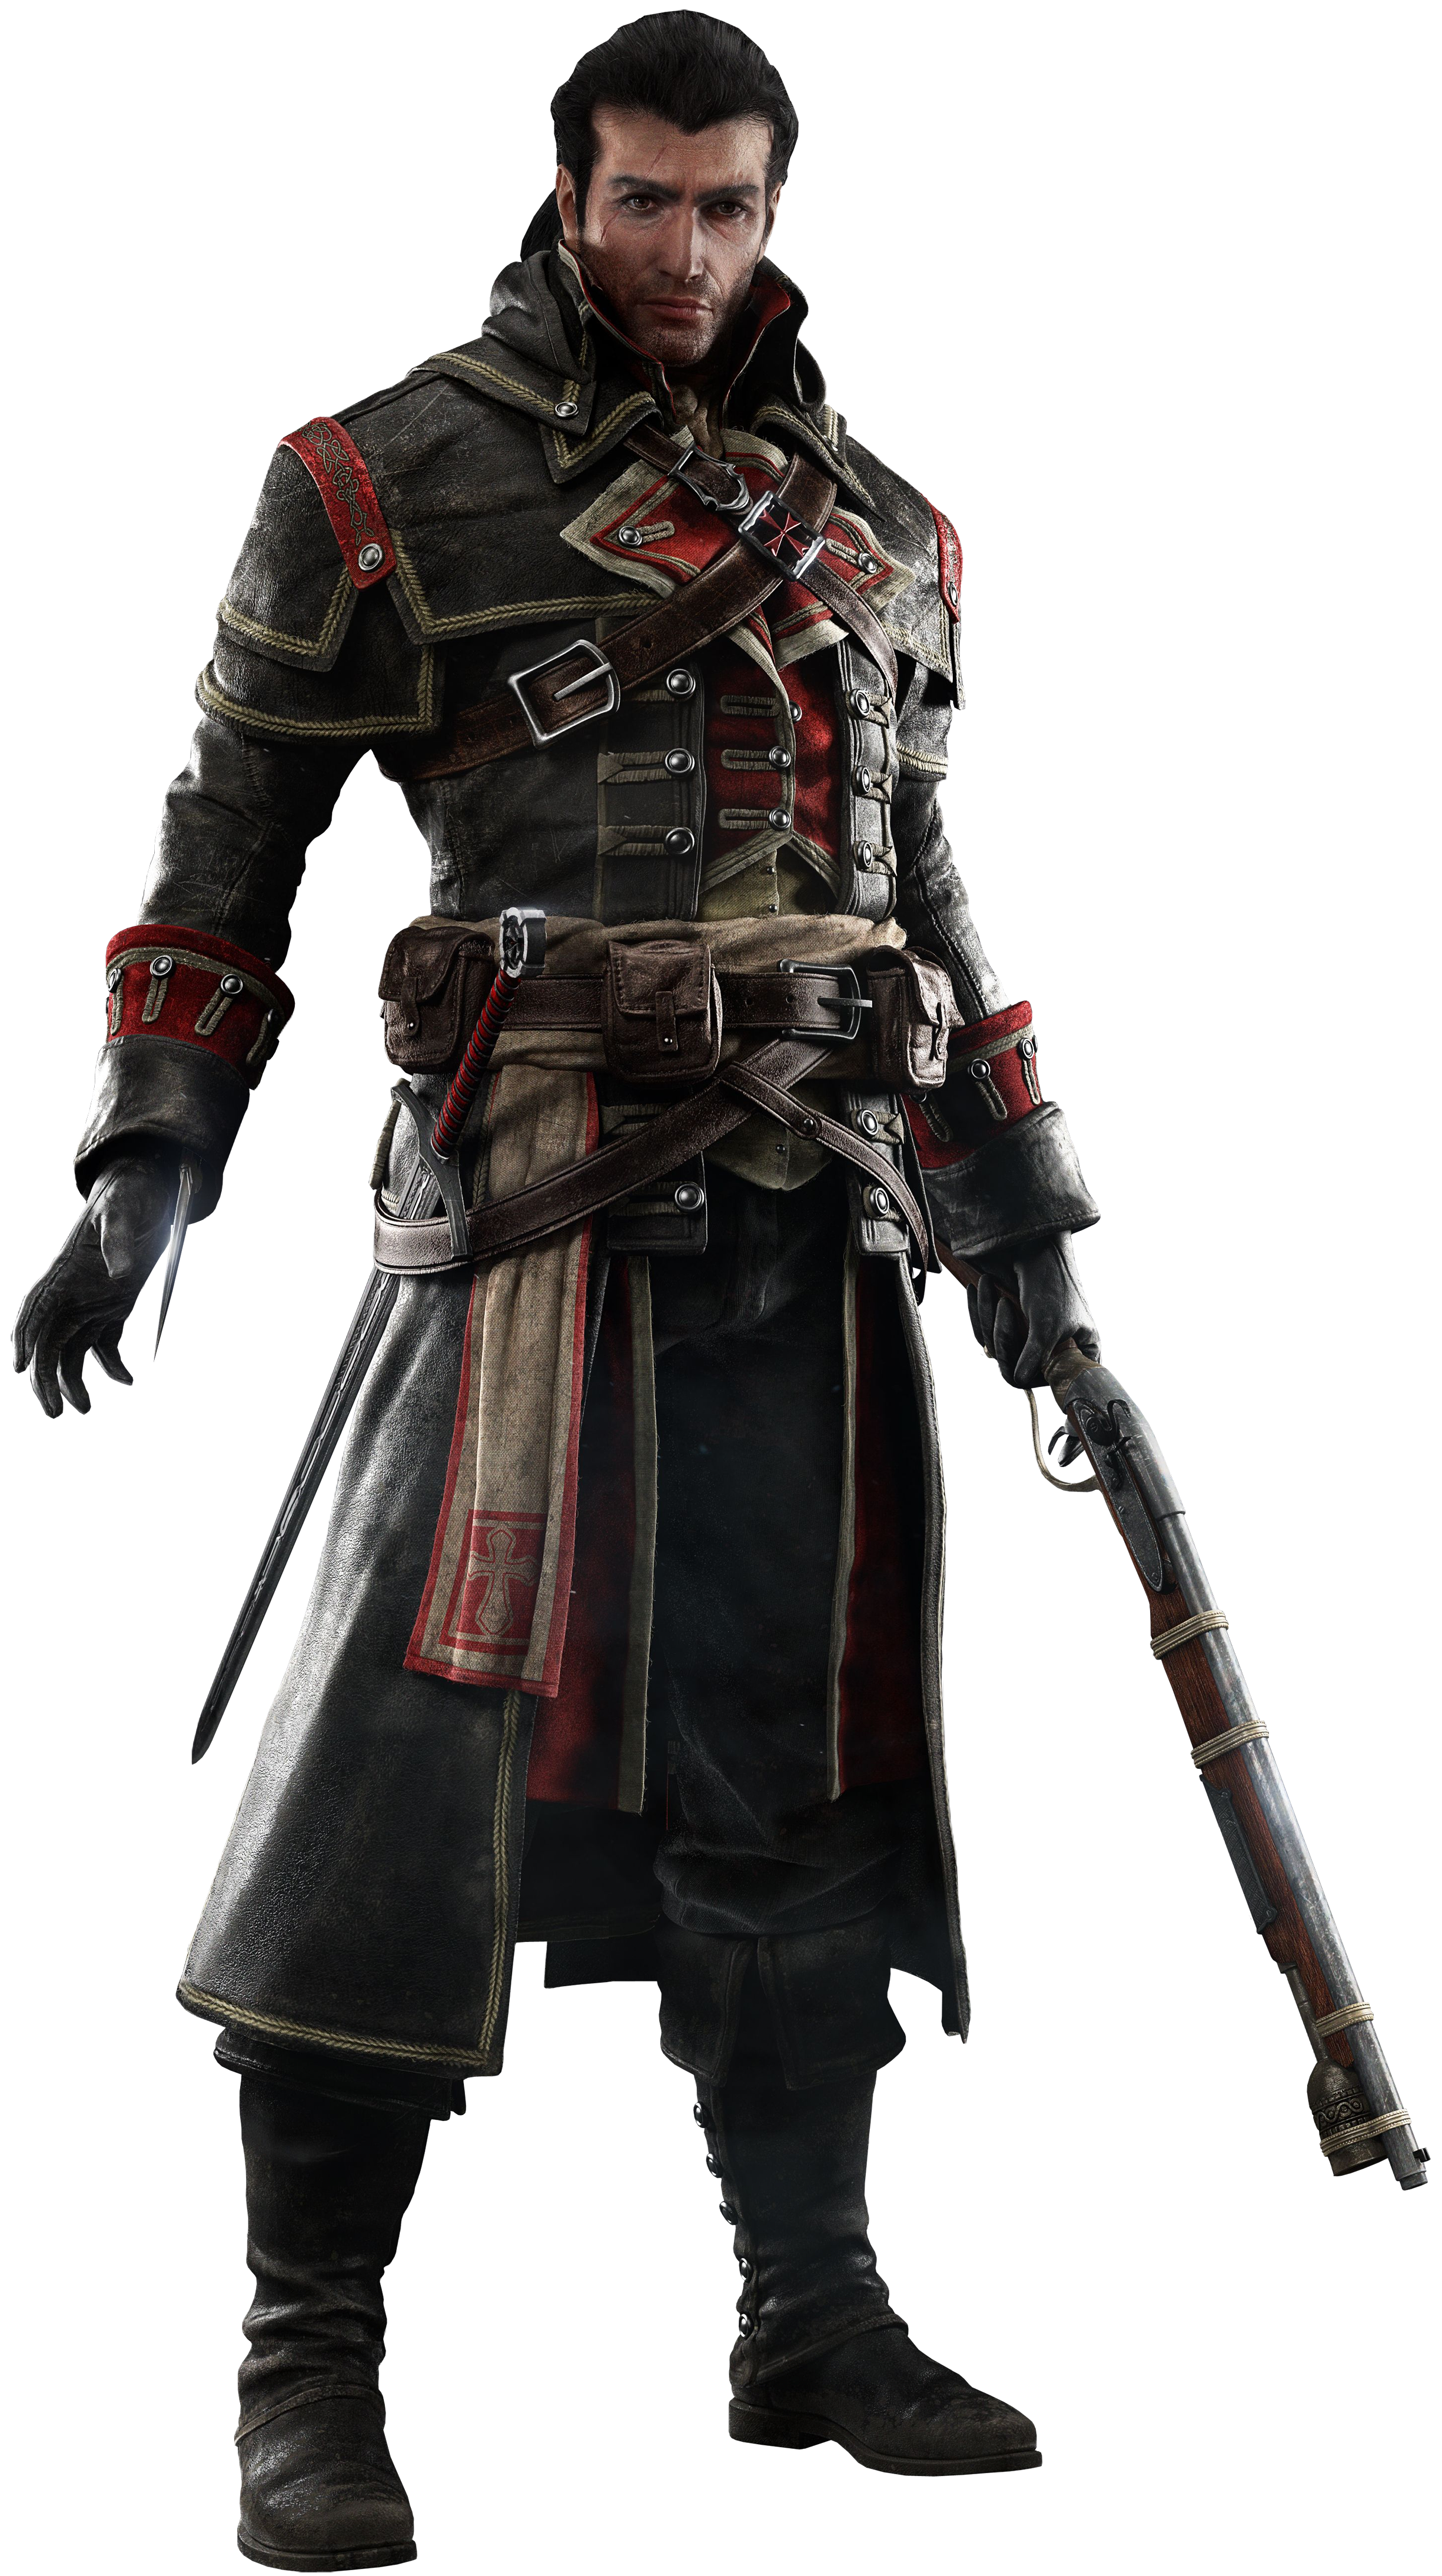 Assassin's Creed Rogue: conheça a história do novo protagonista Shay